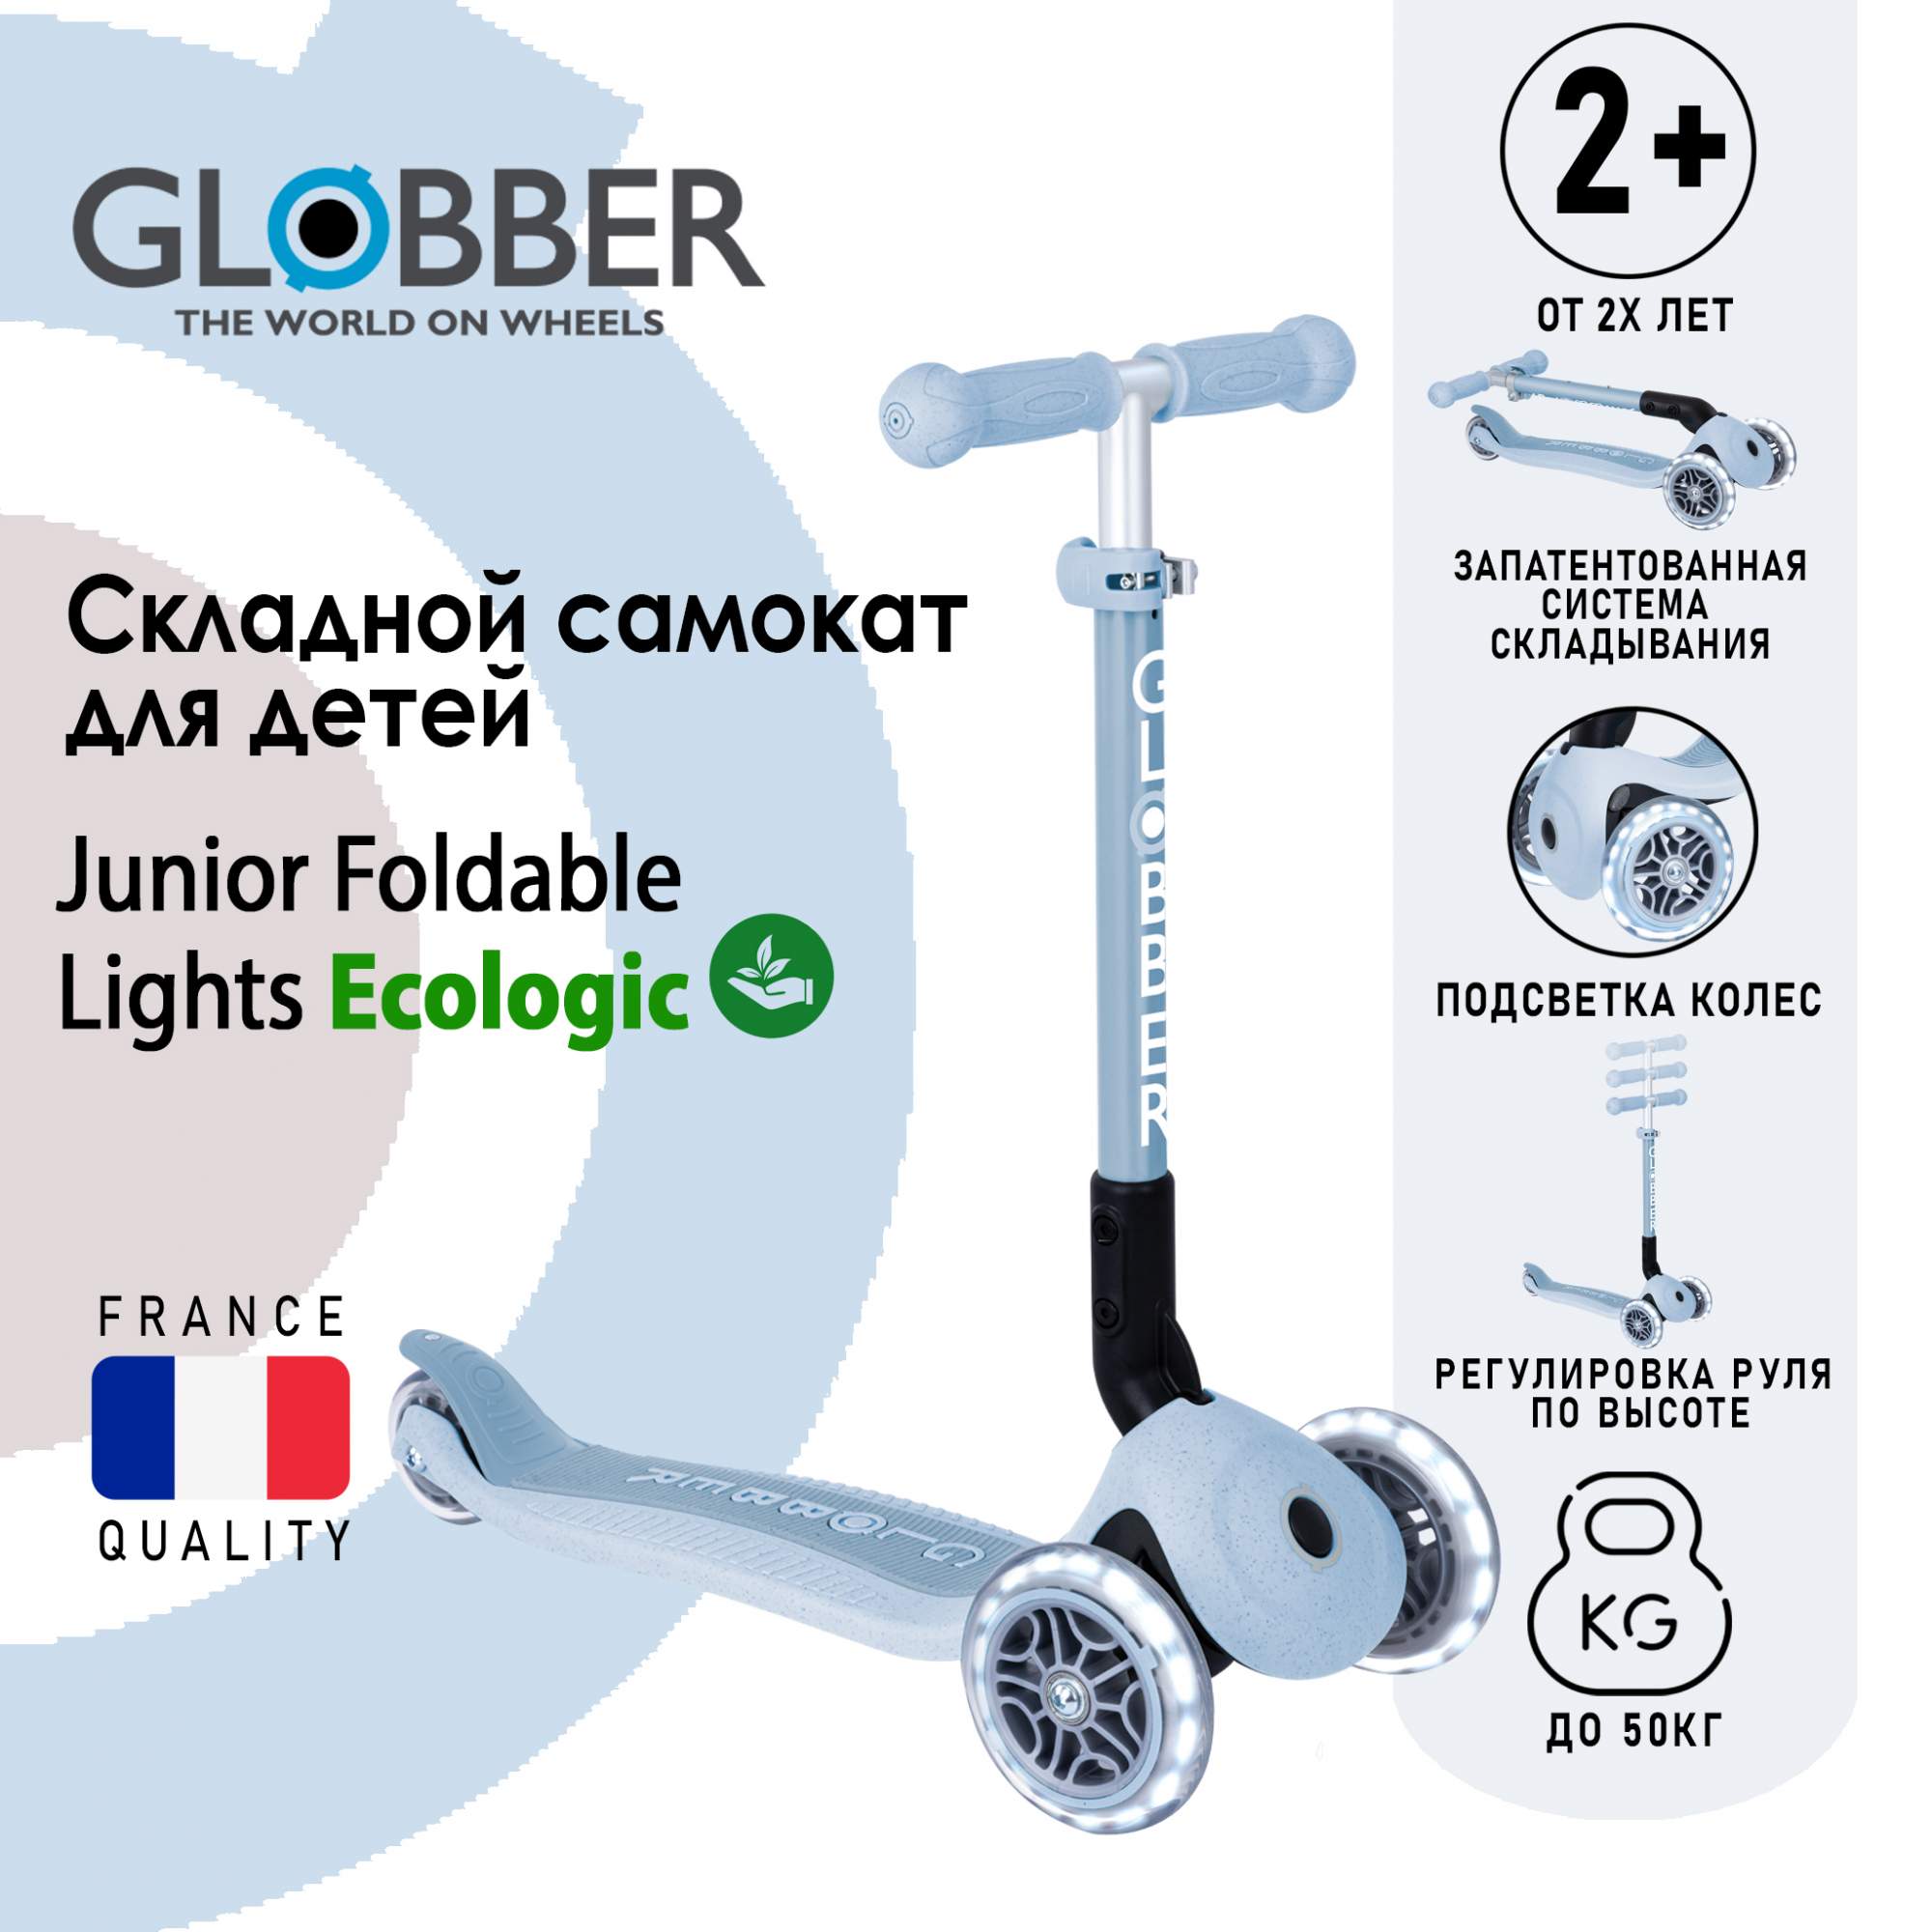 Купить самокат Globber JUNIOR FOLDABLE LIGHTS ECOLOGIC, черничный, цены на Мегамаркет | Артикул: 600015200700